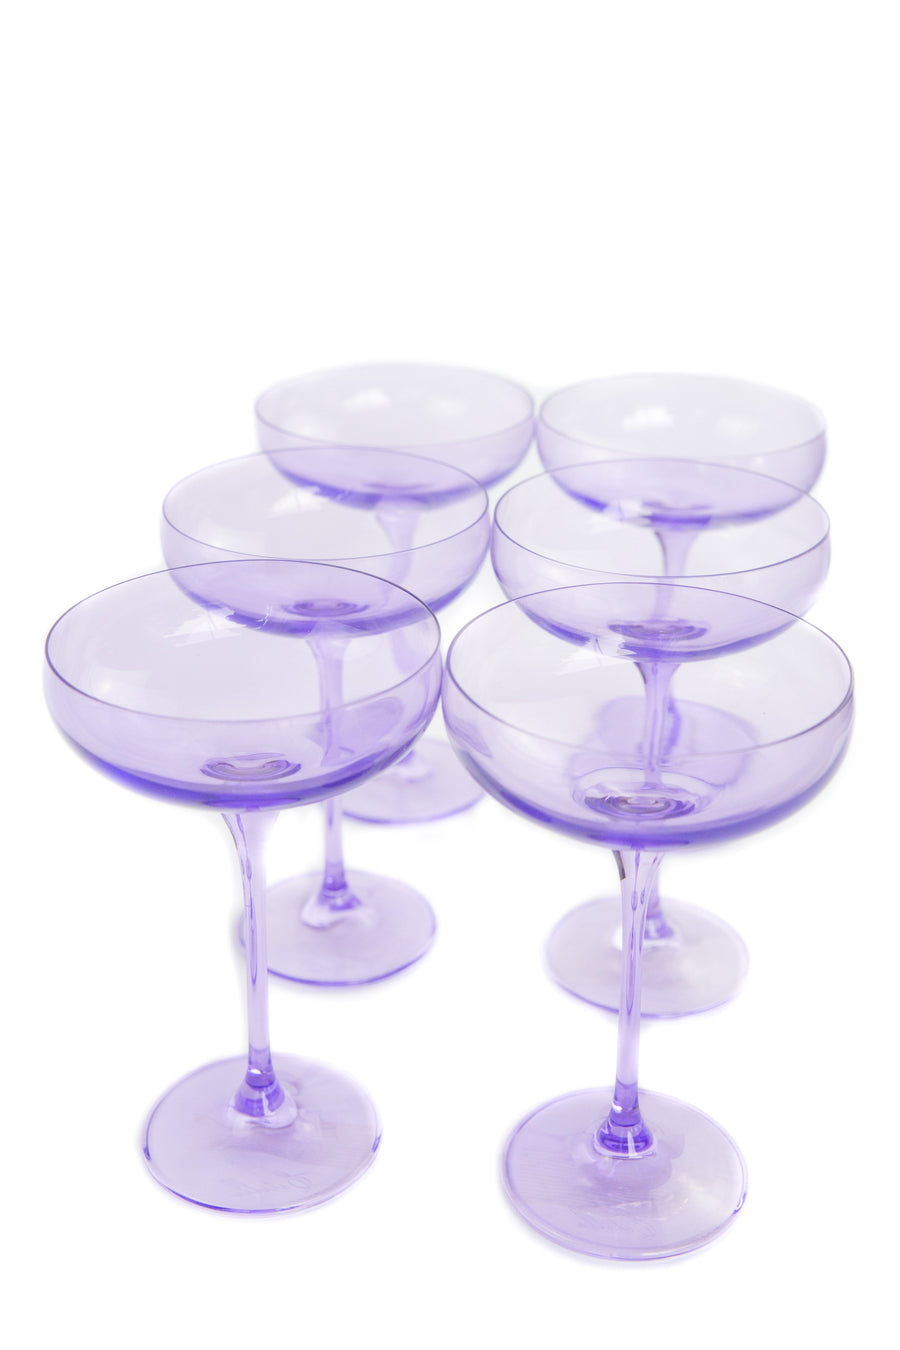 Champagne Coupe Stemware Glasses - Set of 6